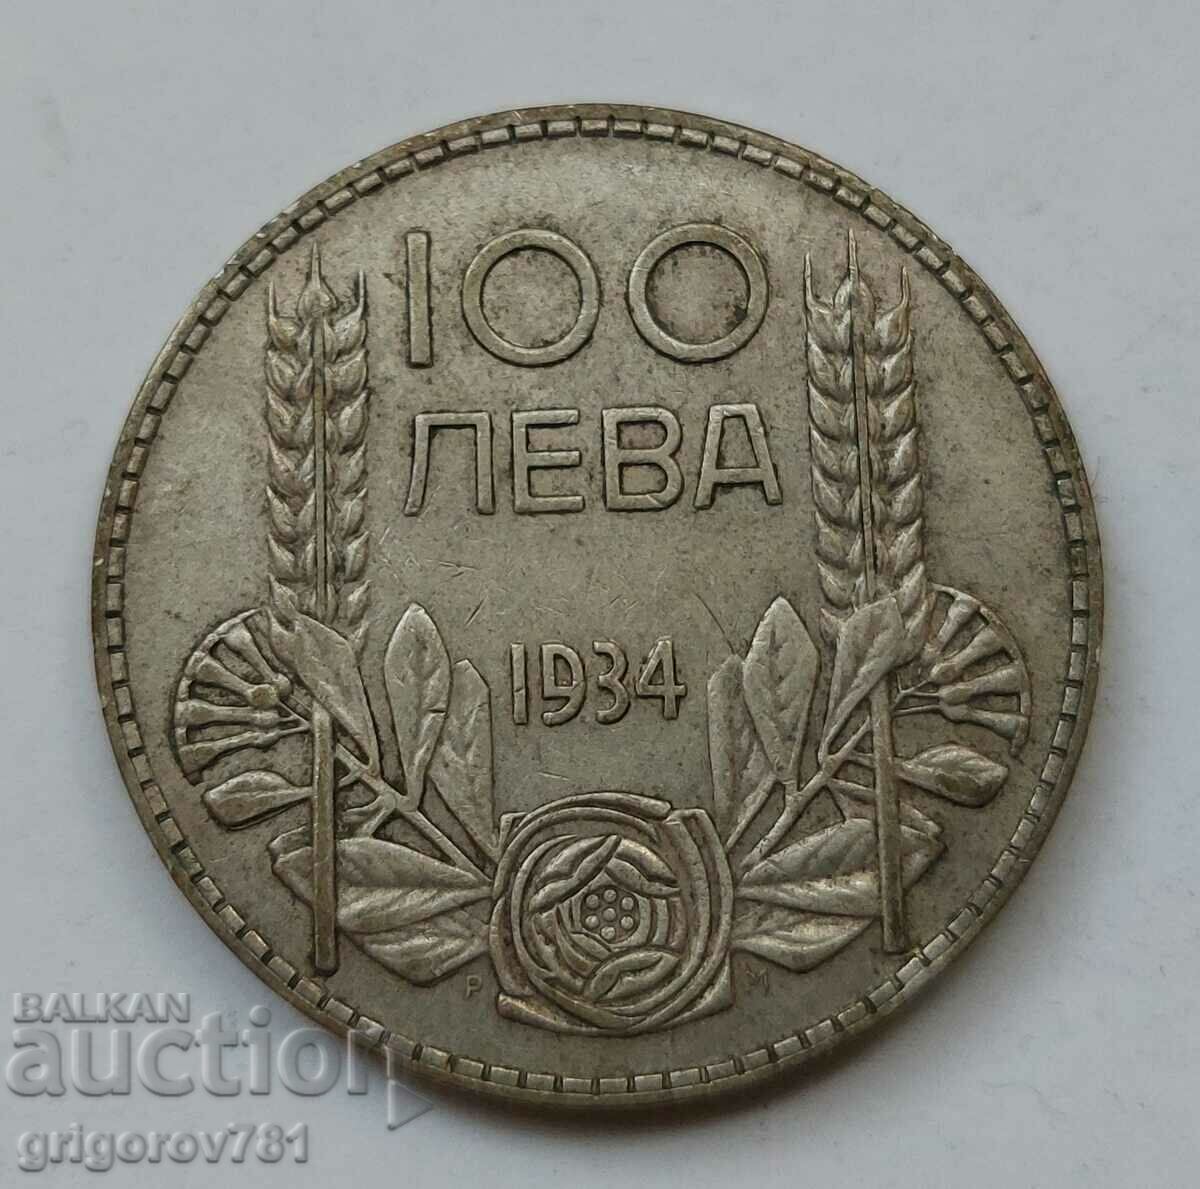 100 leva argint Bulgaria 1934 - monedă de argint #93